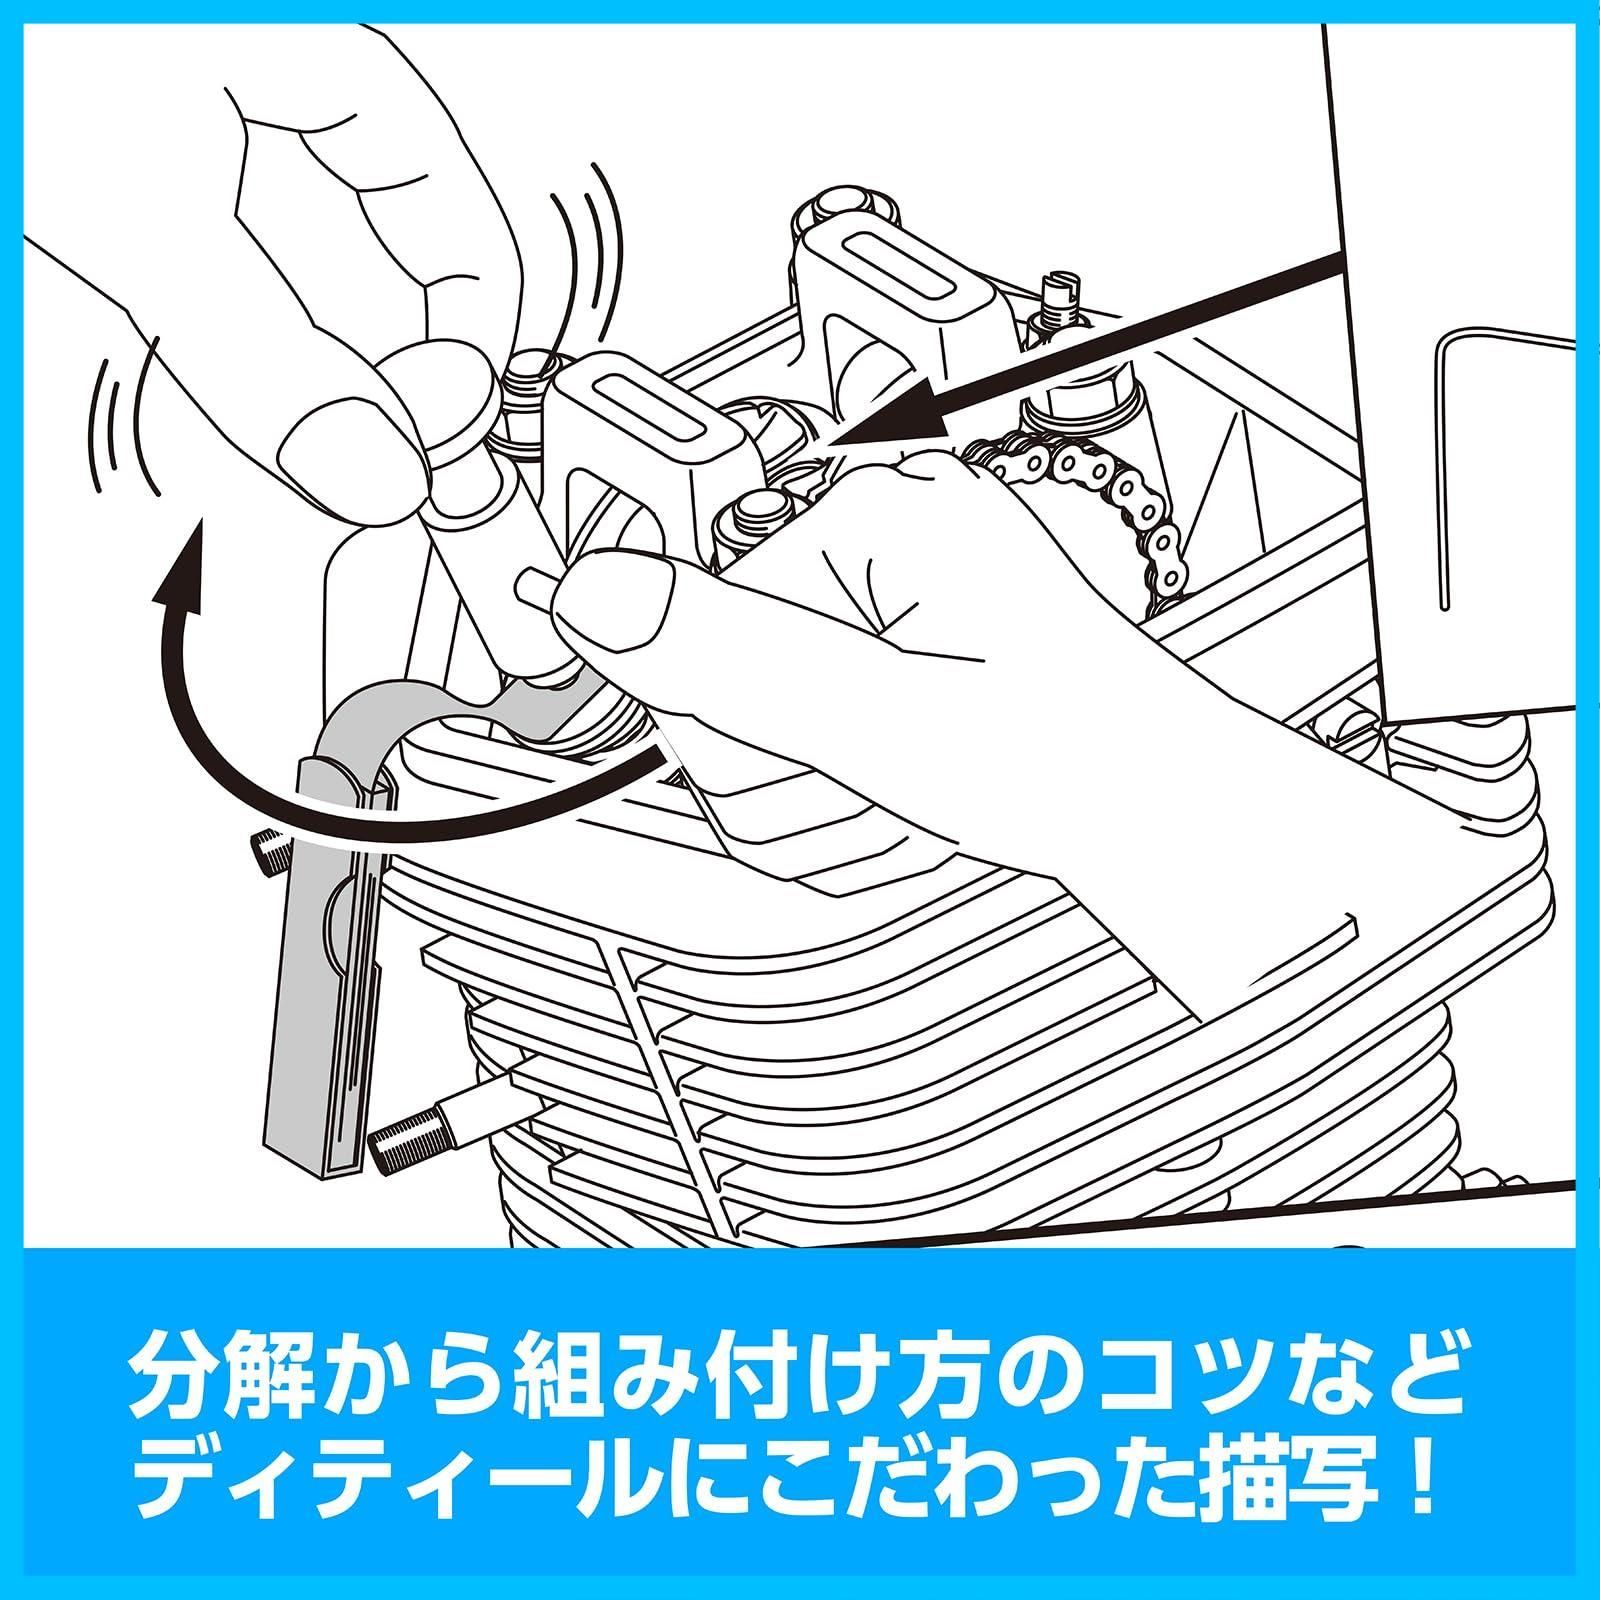 【人気商品】エイプ系縦型エンジン 腰上編 00-0901001 虎の巻 ボアアップキットの組み付け方 キタコKITACO